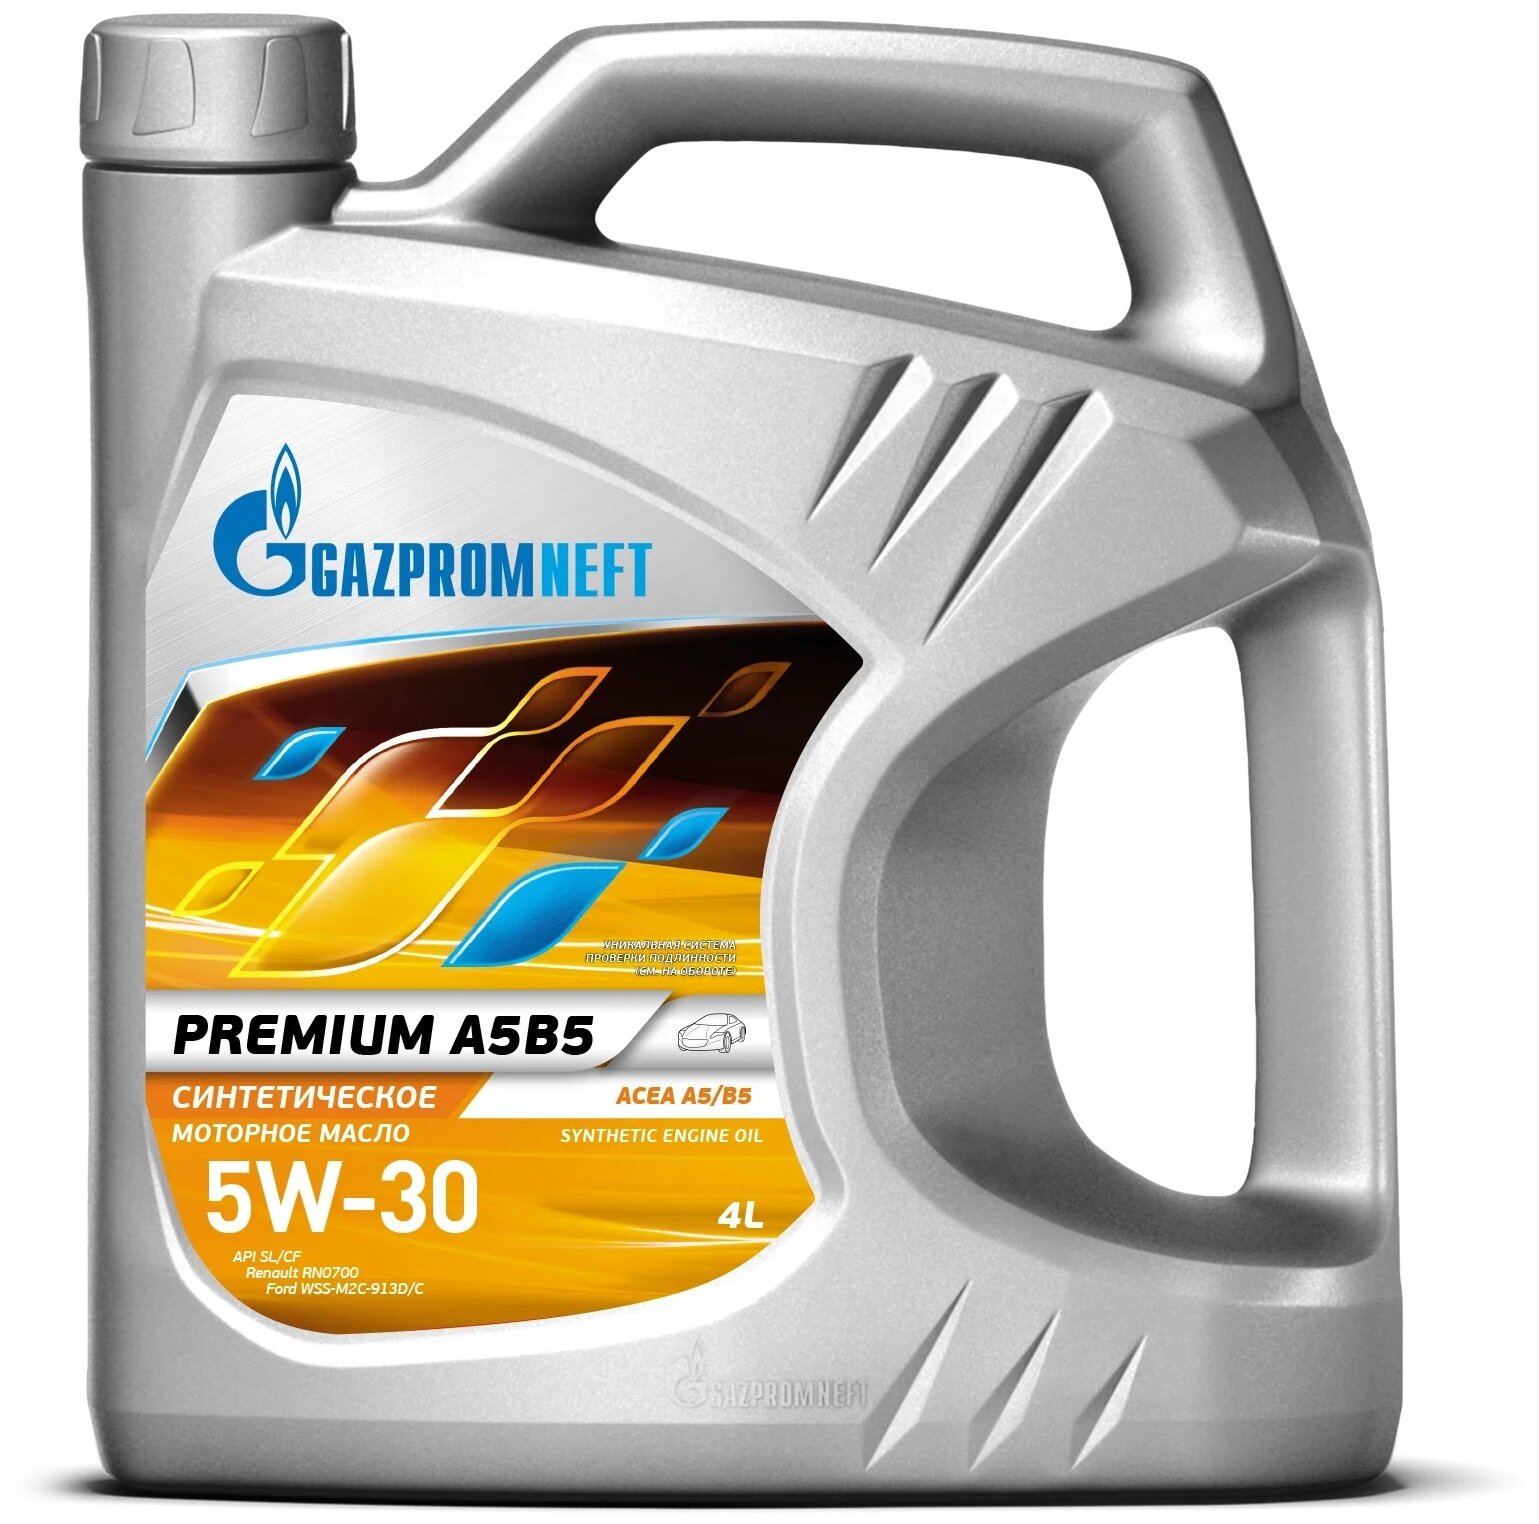 Синтетическое моторное масло Газпромнефть Premium A5B5 5W-30